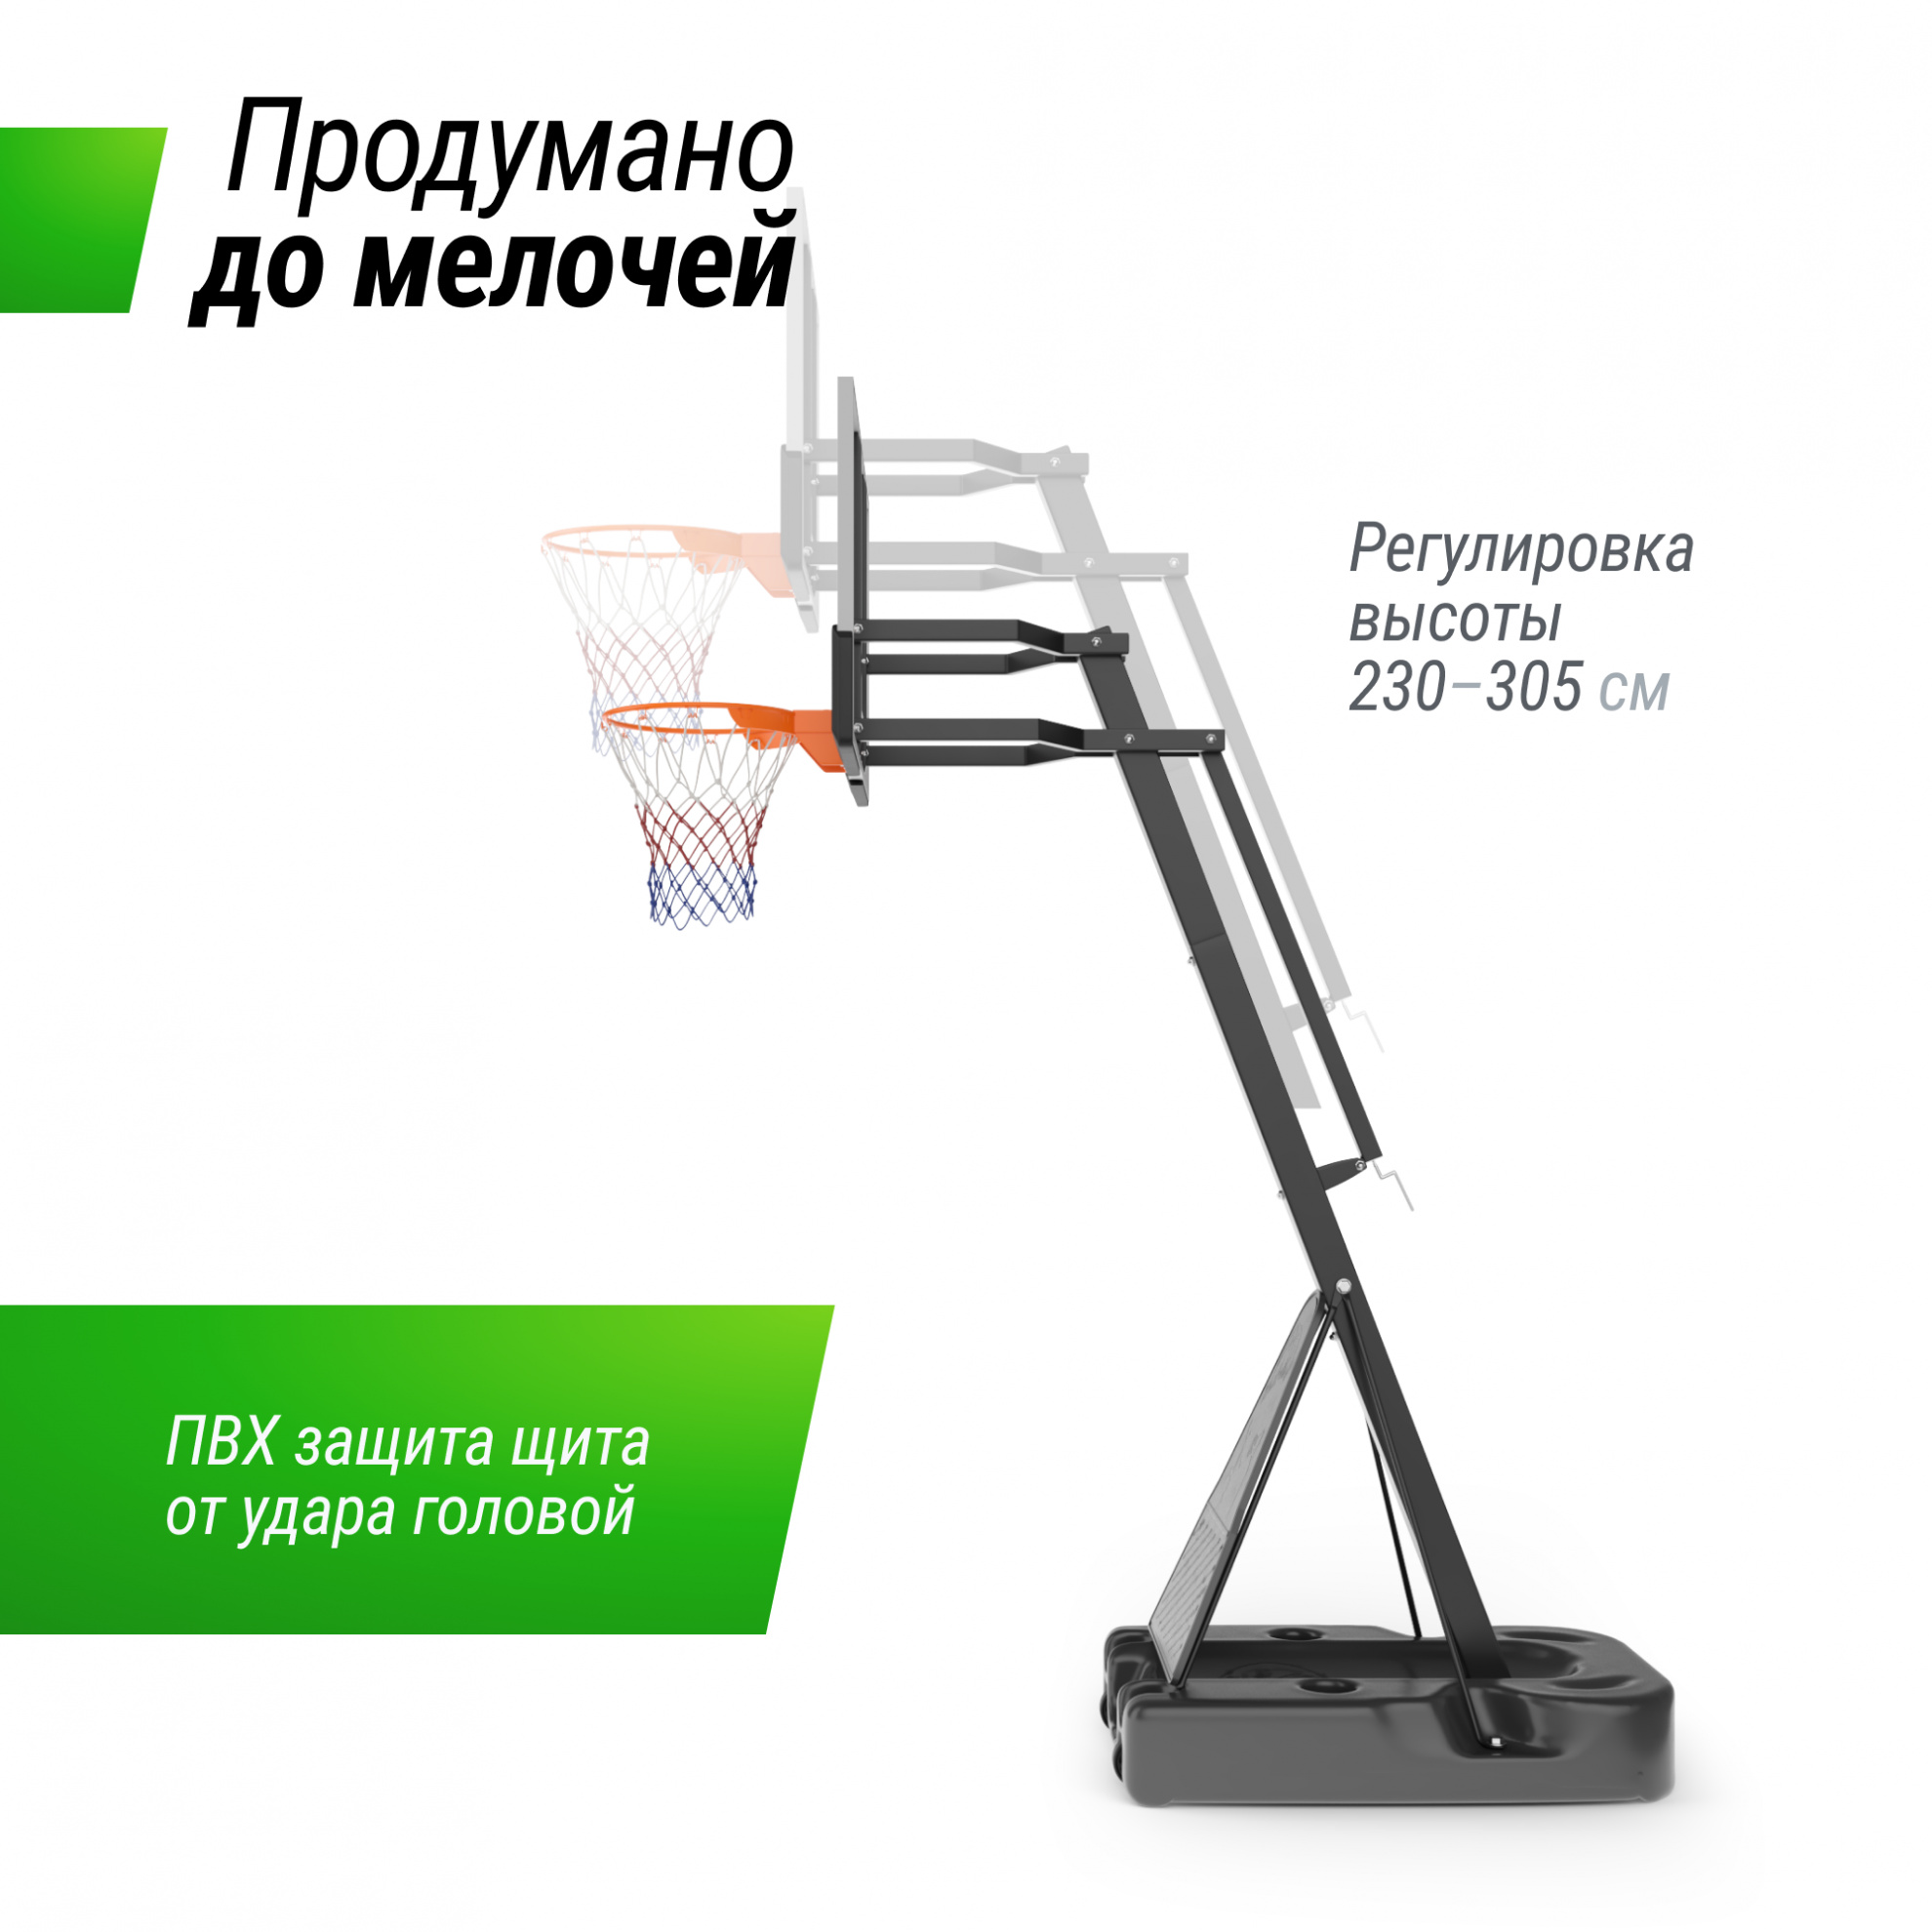 Мобильная баскетбольная стойка Unix Line B-Stand-PC 54x32’’ R45 H230-305 см